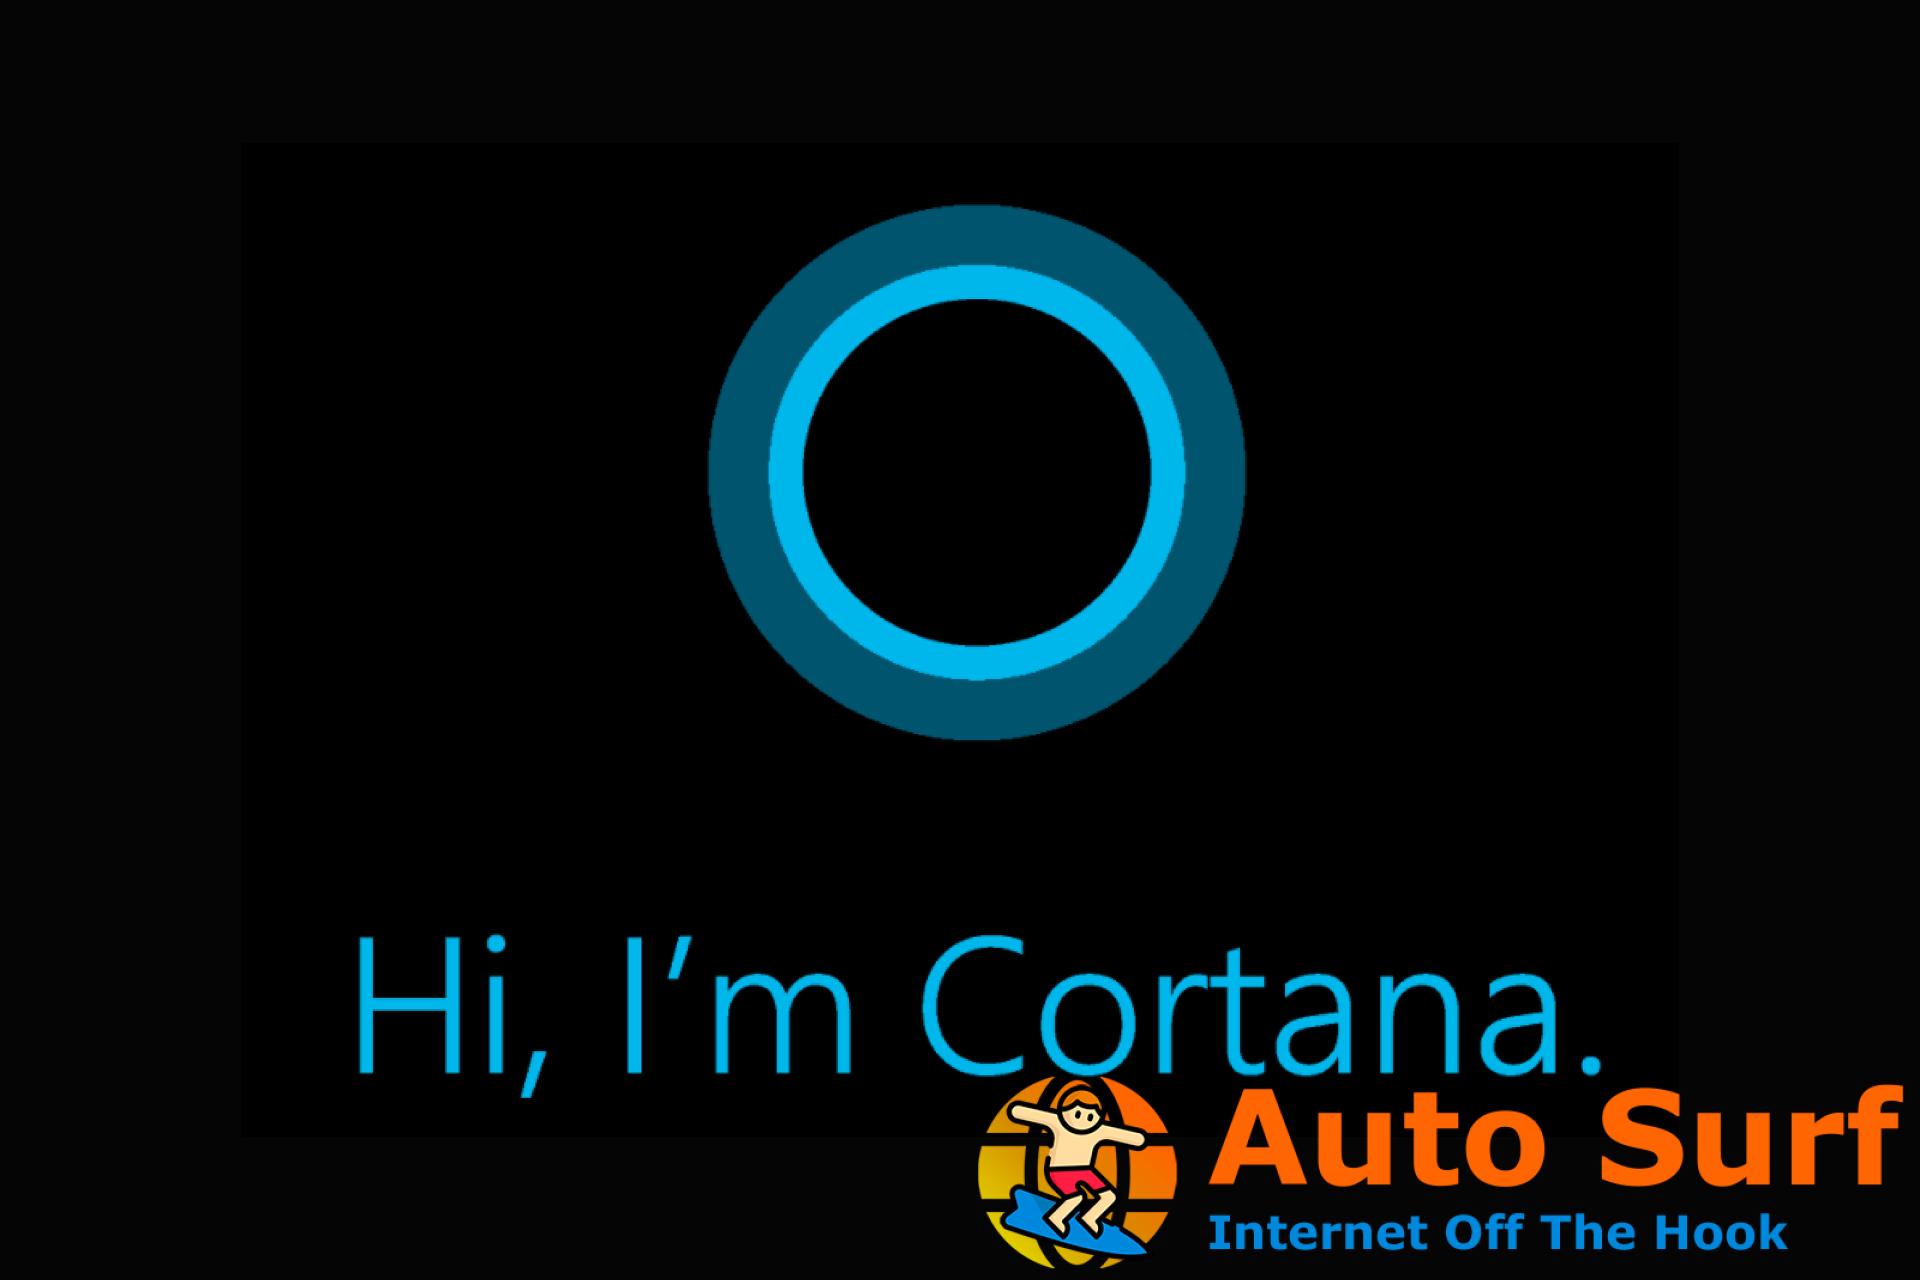 ¿Cómo puedo habilitar Cortana?